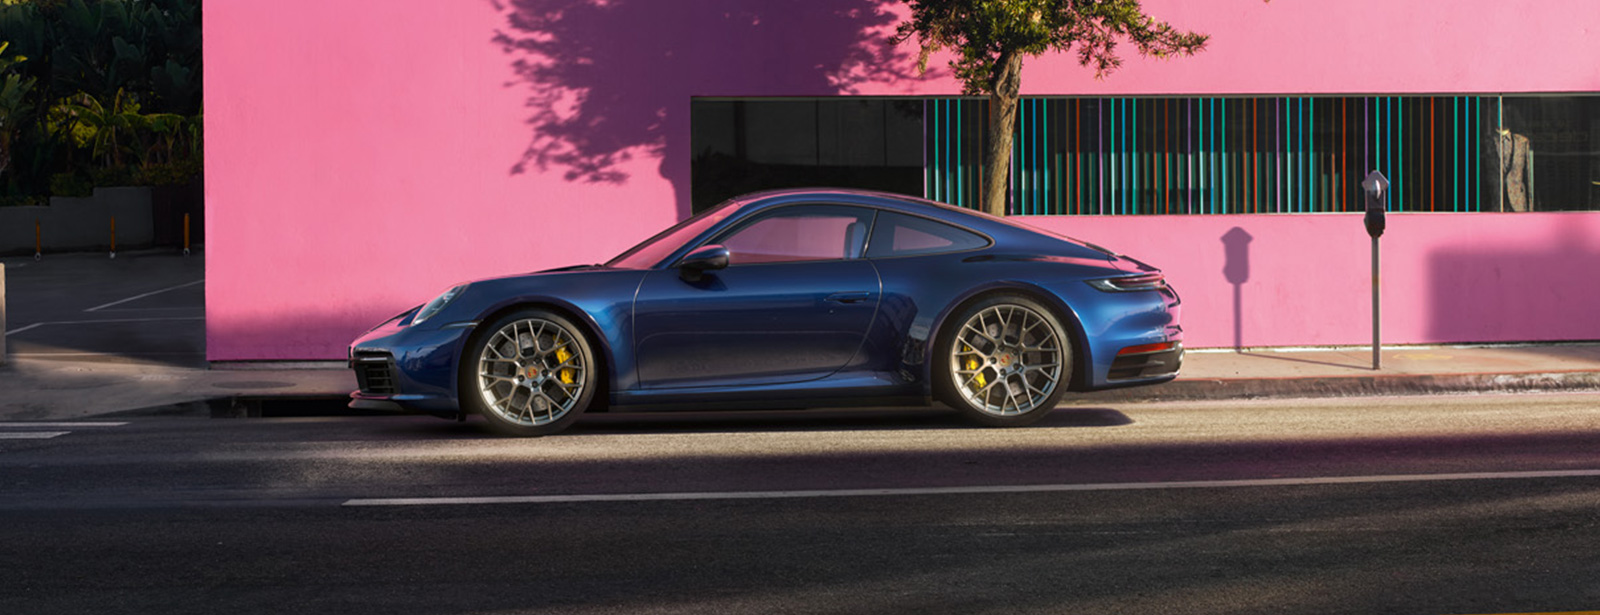 Porsche - The new 911 Debut Fair